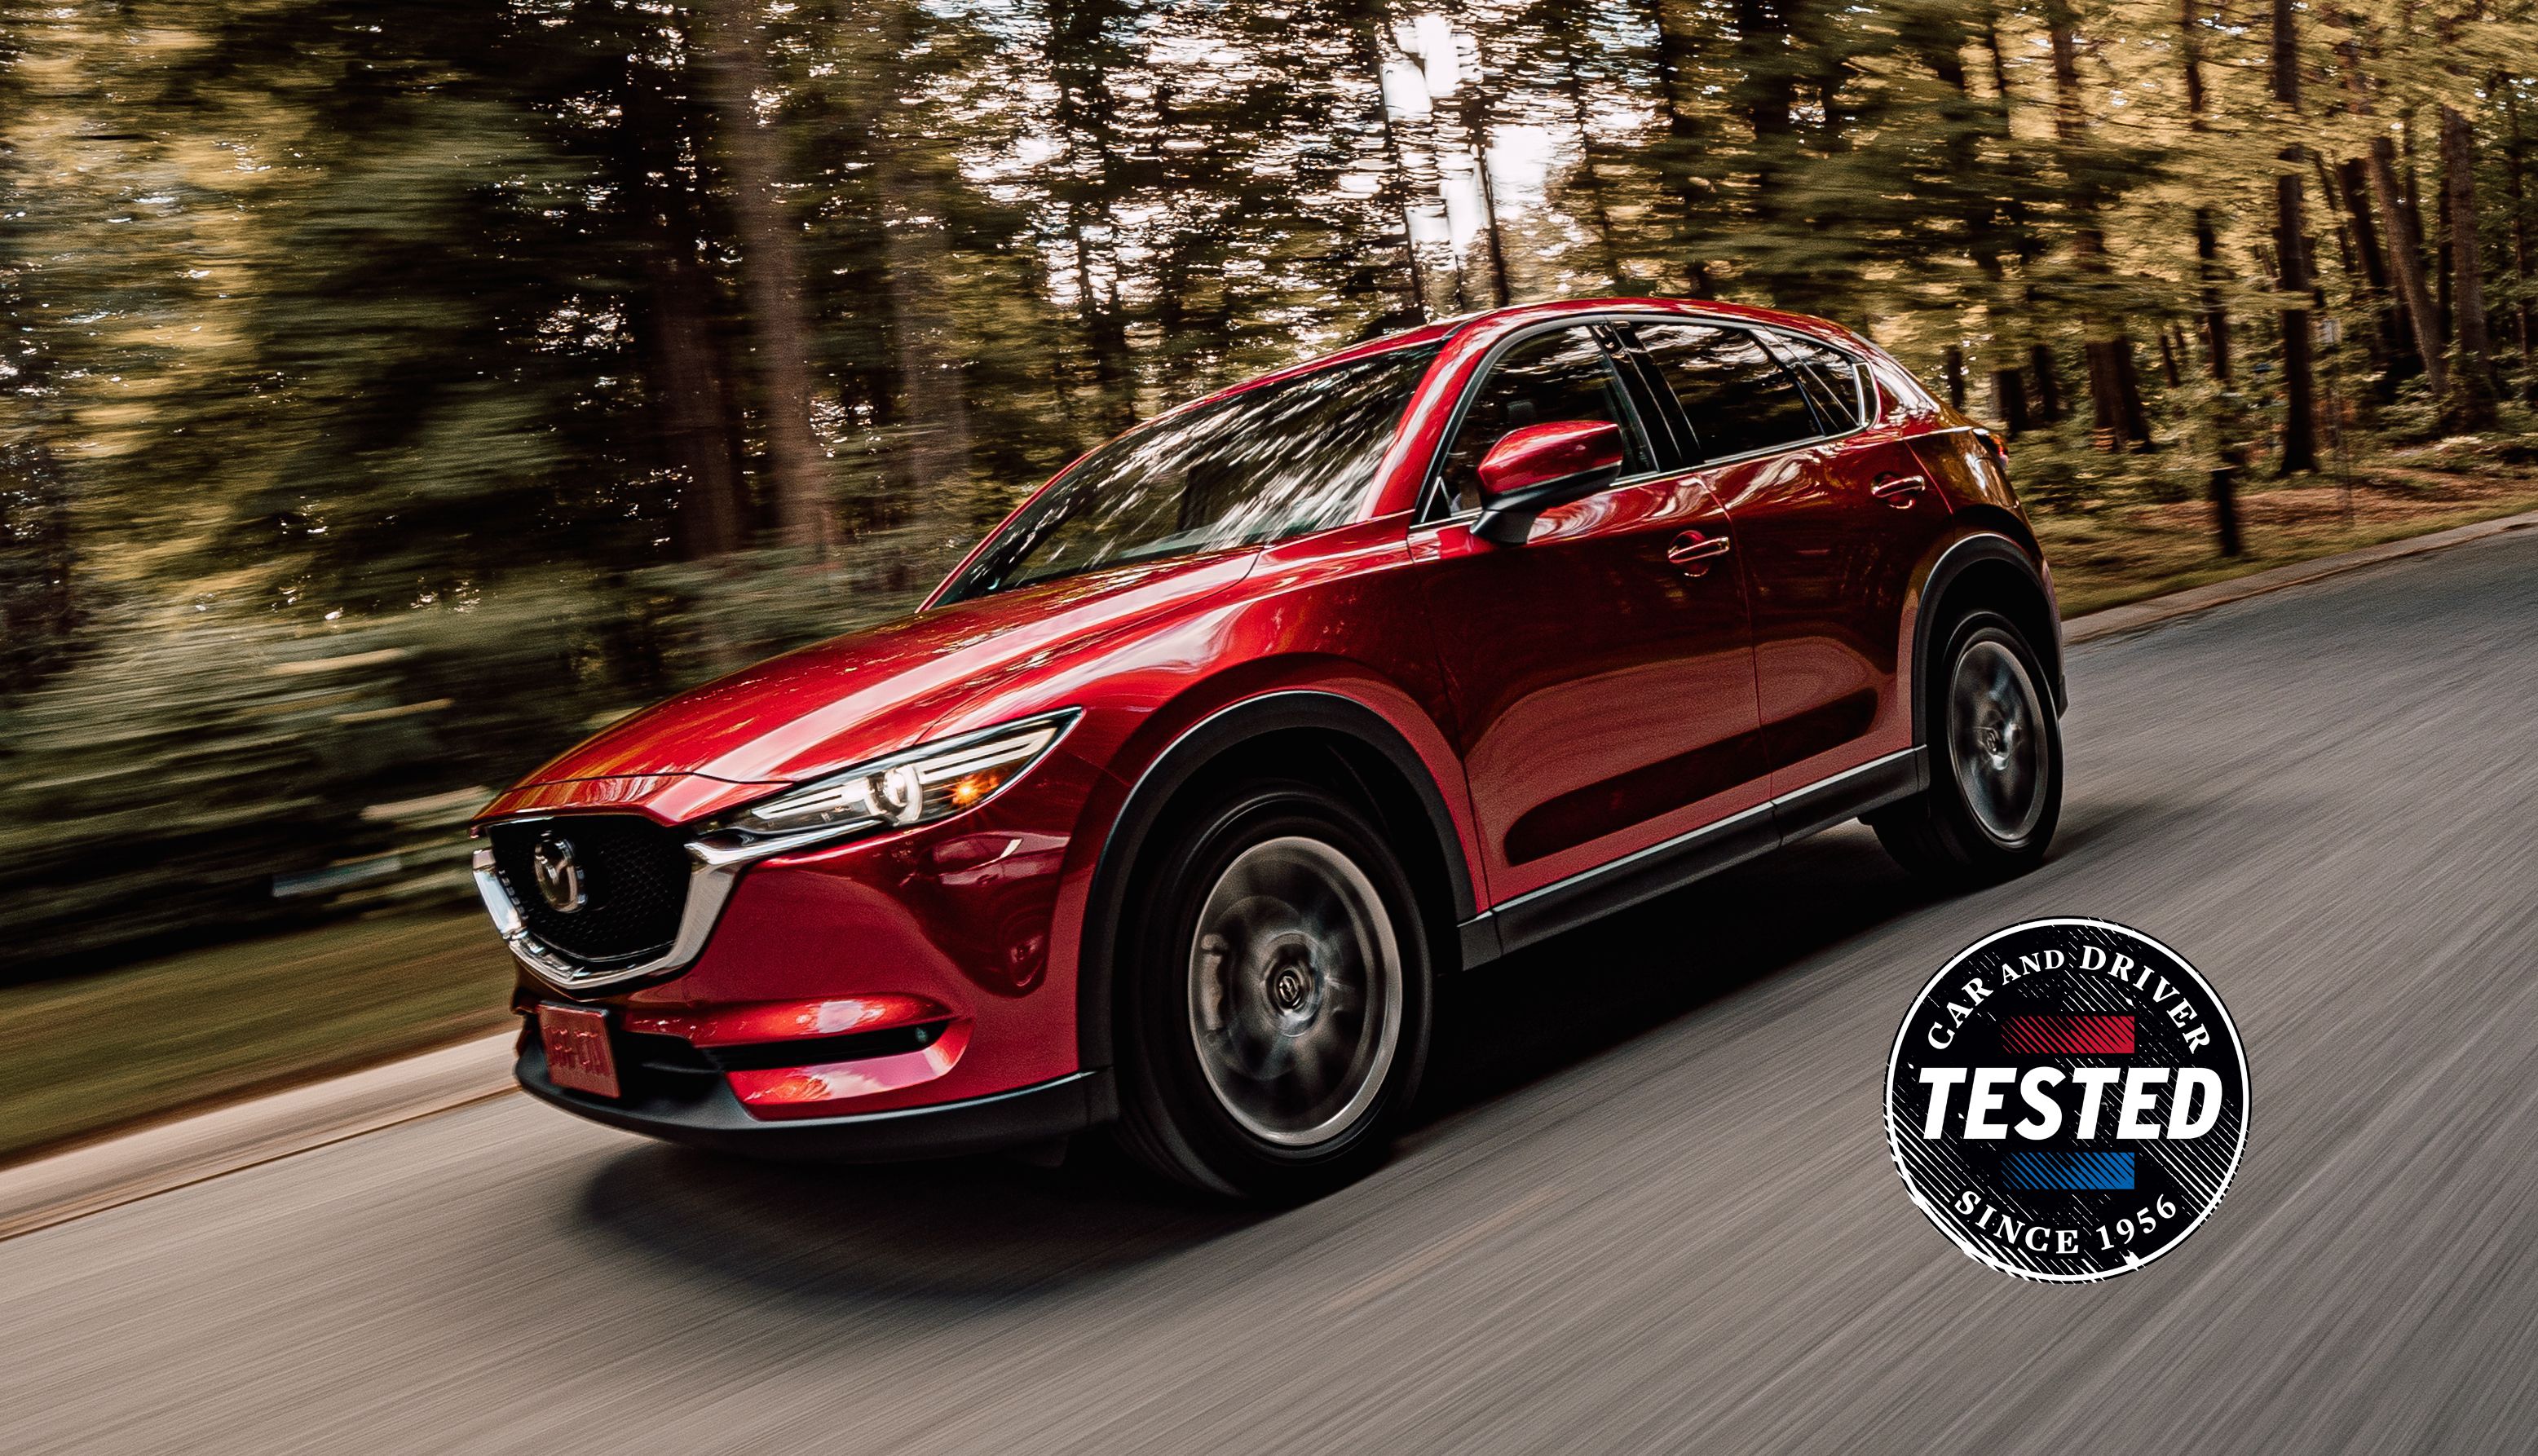 2019 Mazda Cx 5 Diesel Beat Epa Highway Mpg Estimate In Our Testing